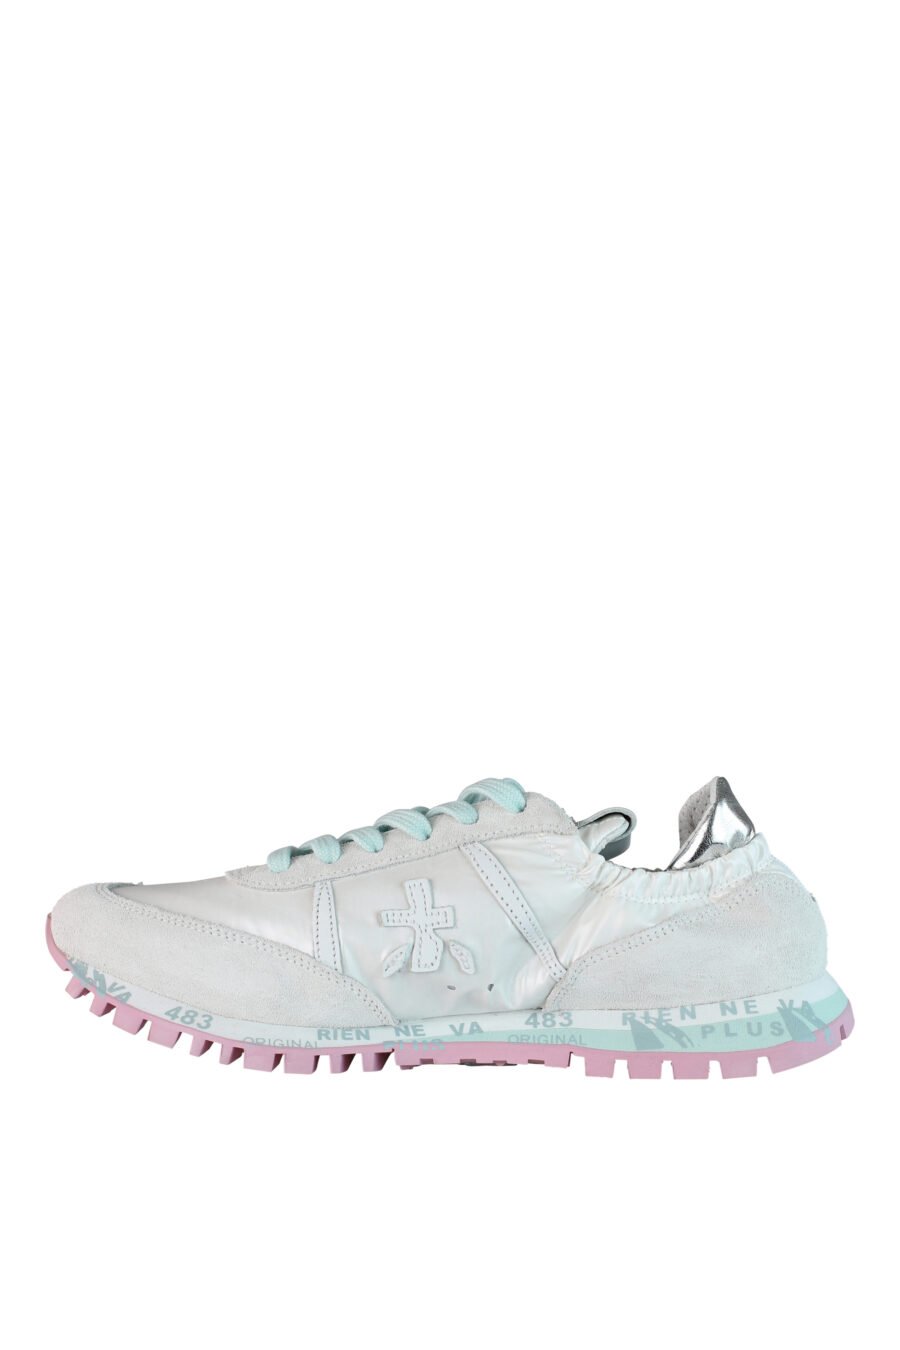 Zapatillas blancas con elástico "sean-d 6251" - IMG 0549